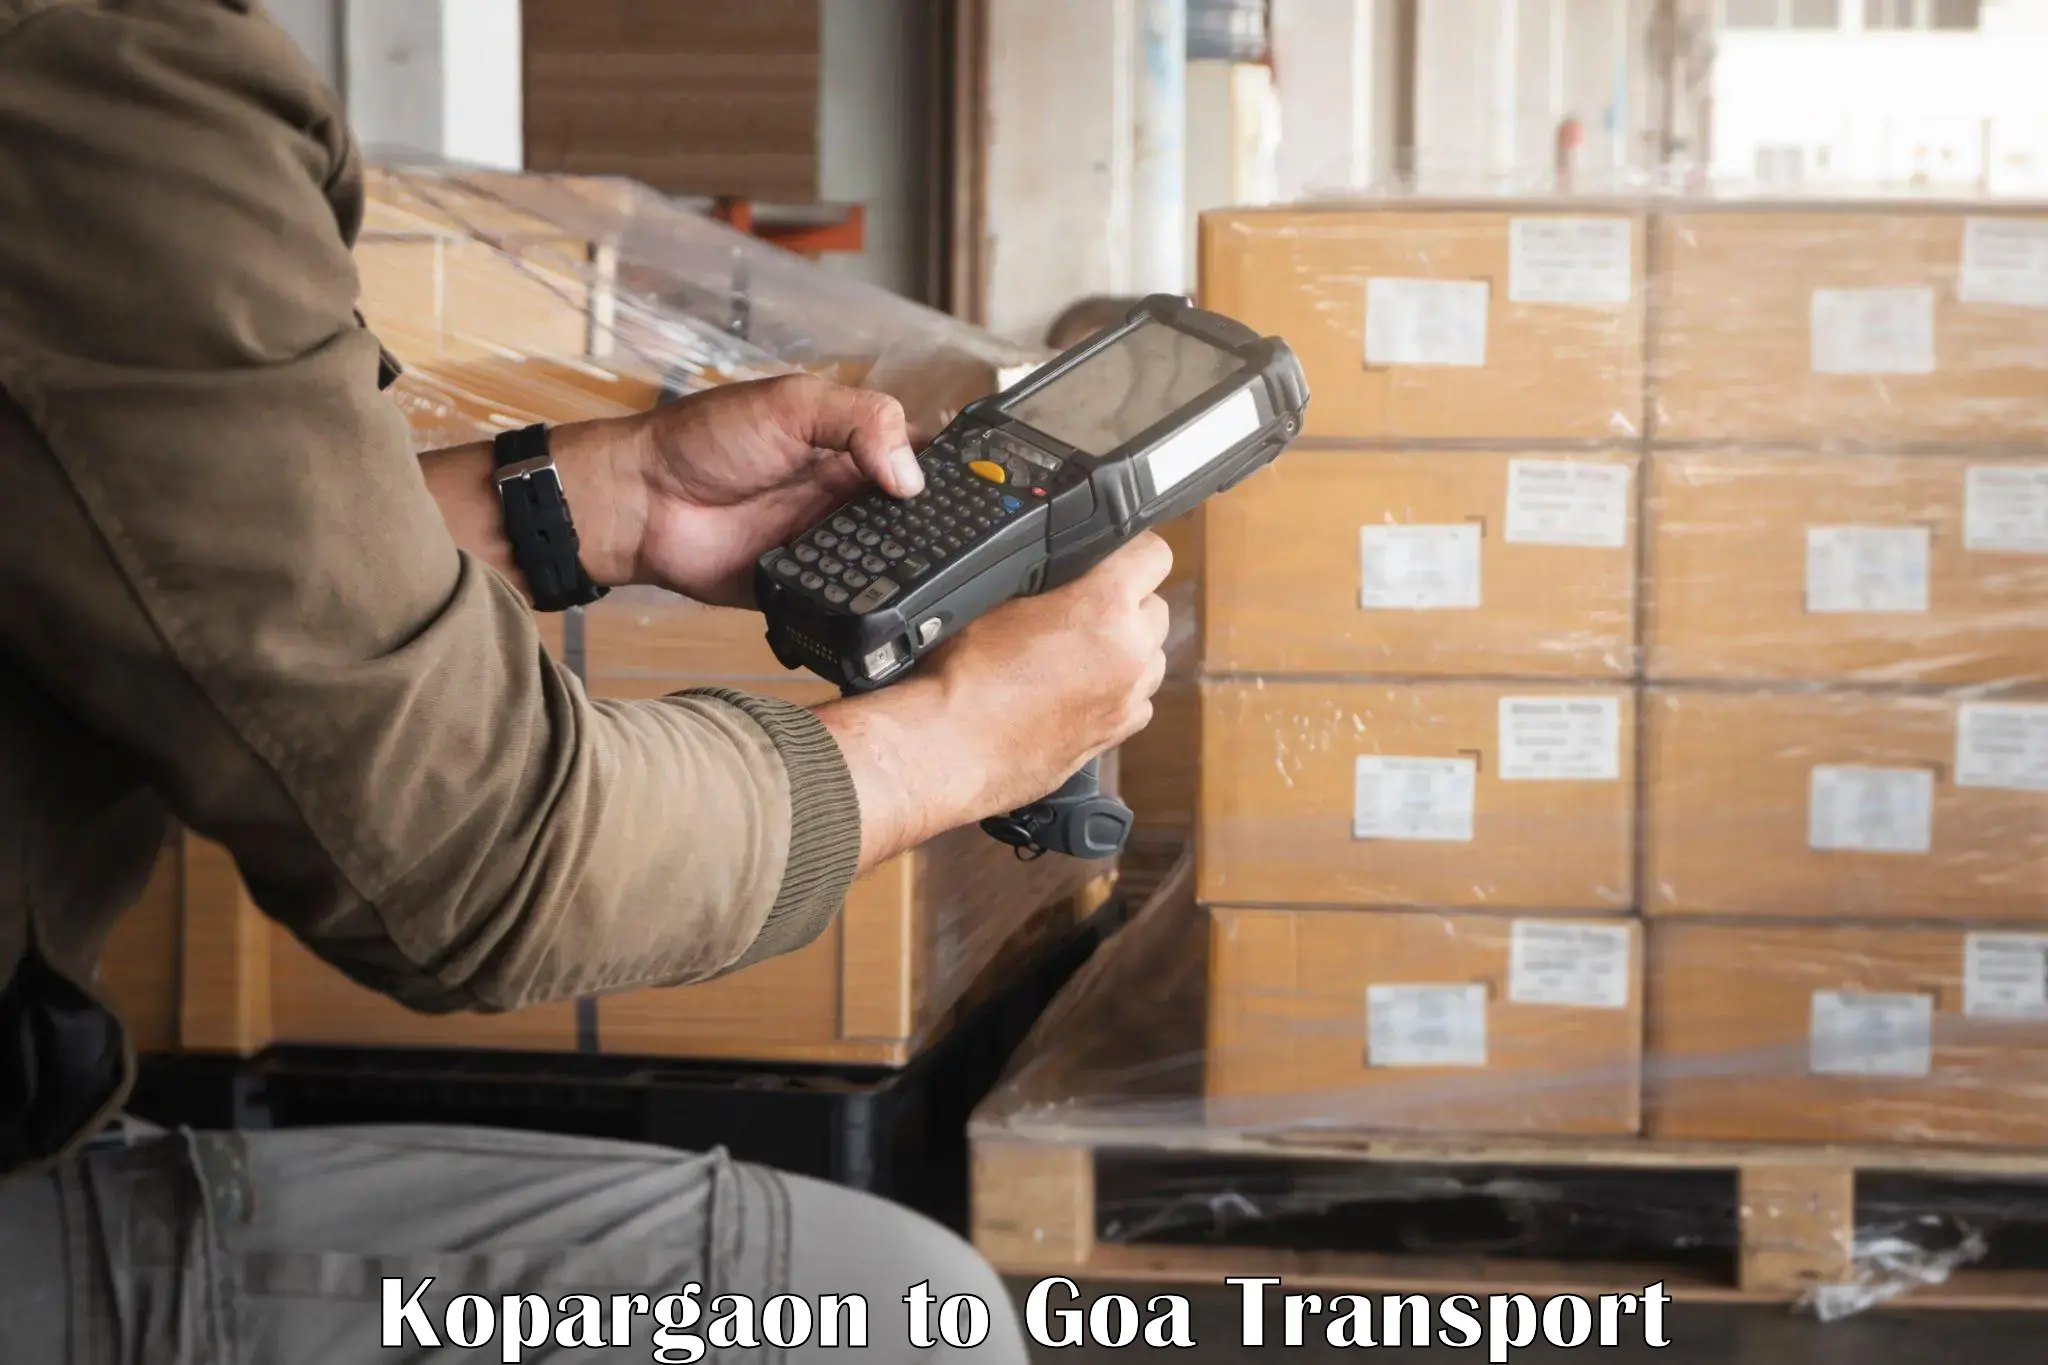 Door to door transport services Kopargaon to NIT Goa